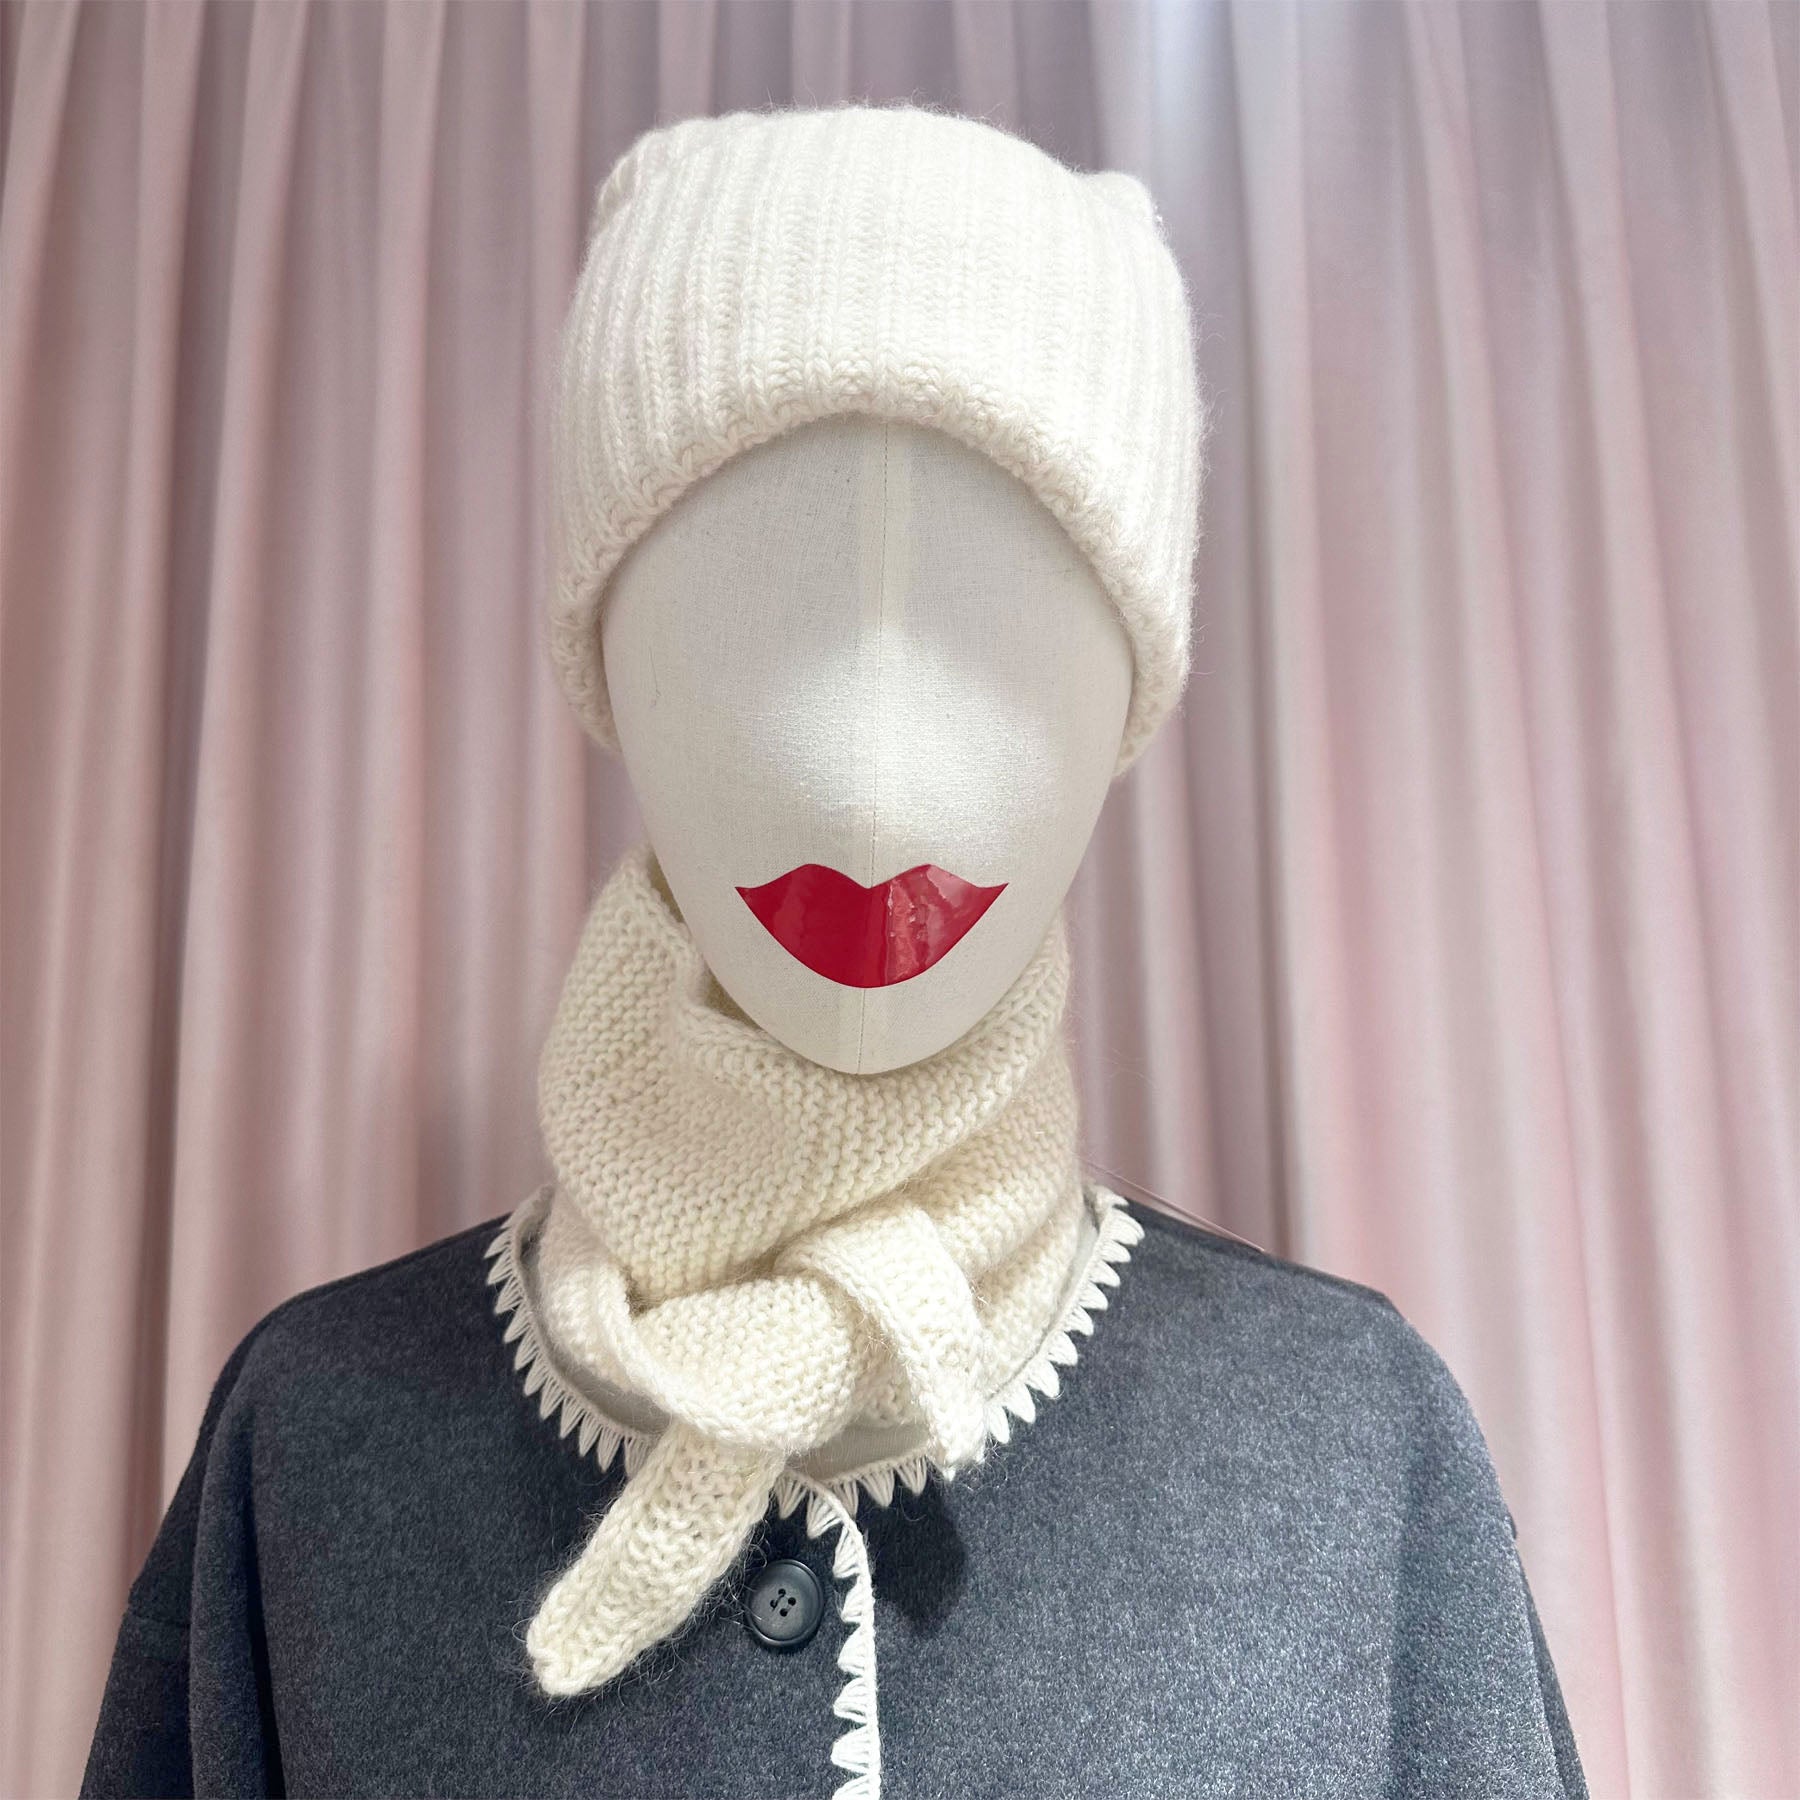 Sophie Schal zum wickeln - KNOCKNOK Fashion